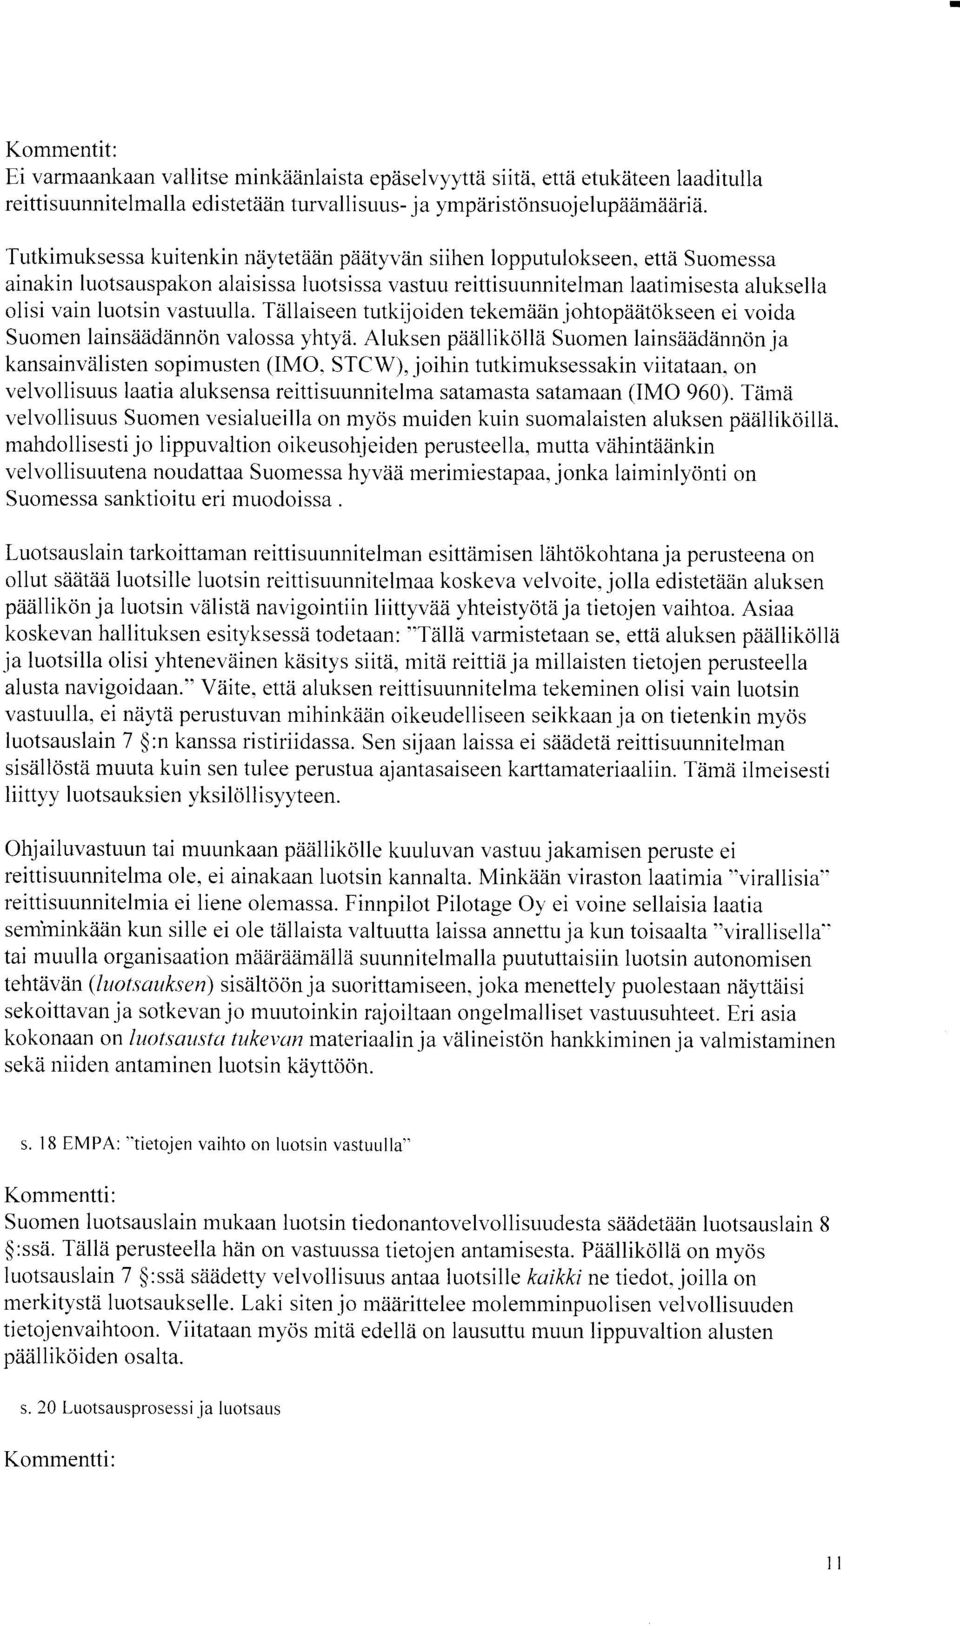 ettzi Suomessa ainakin luotsauspakon alaisissa luotsissa vastuu reittisuunnitelman laatimisestaluksella olisi vain luotsin vastuulla.